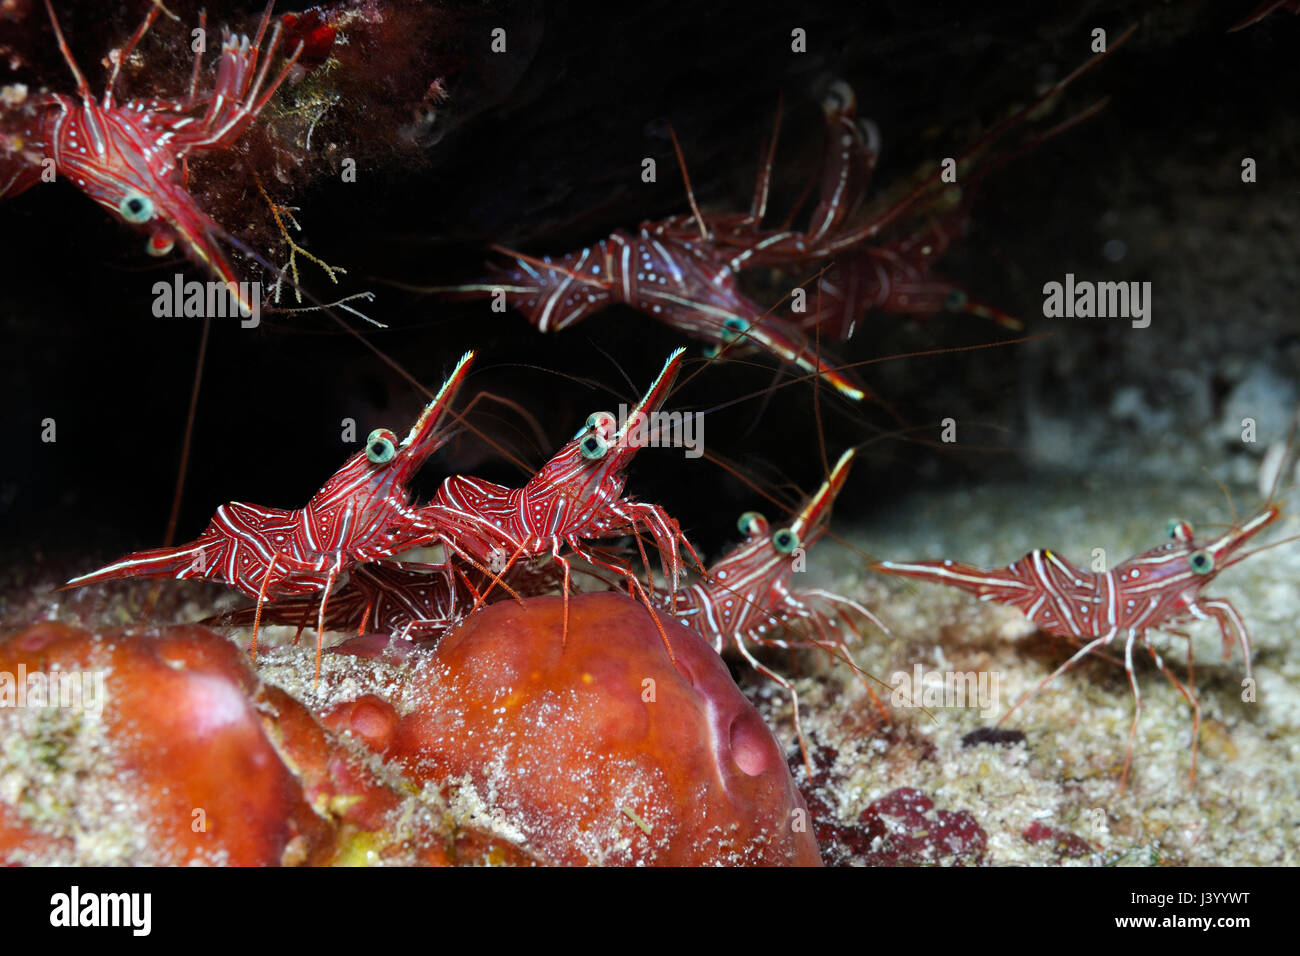 Crevettes Rhynchocinetes durbanensis (danse, Rhynchocinetes uritai) se cachent dans une étroite fissure, Panglao, Philippines Banque D'Images